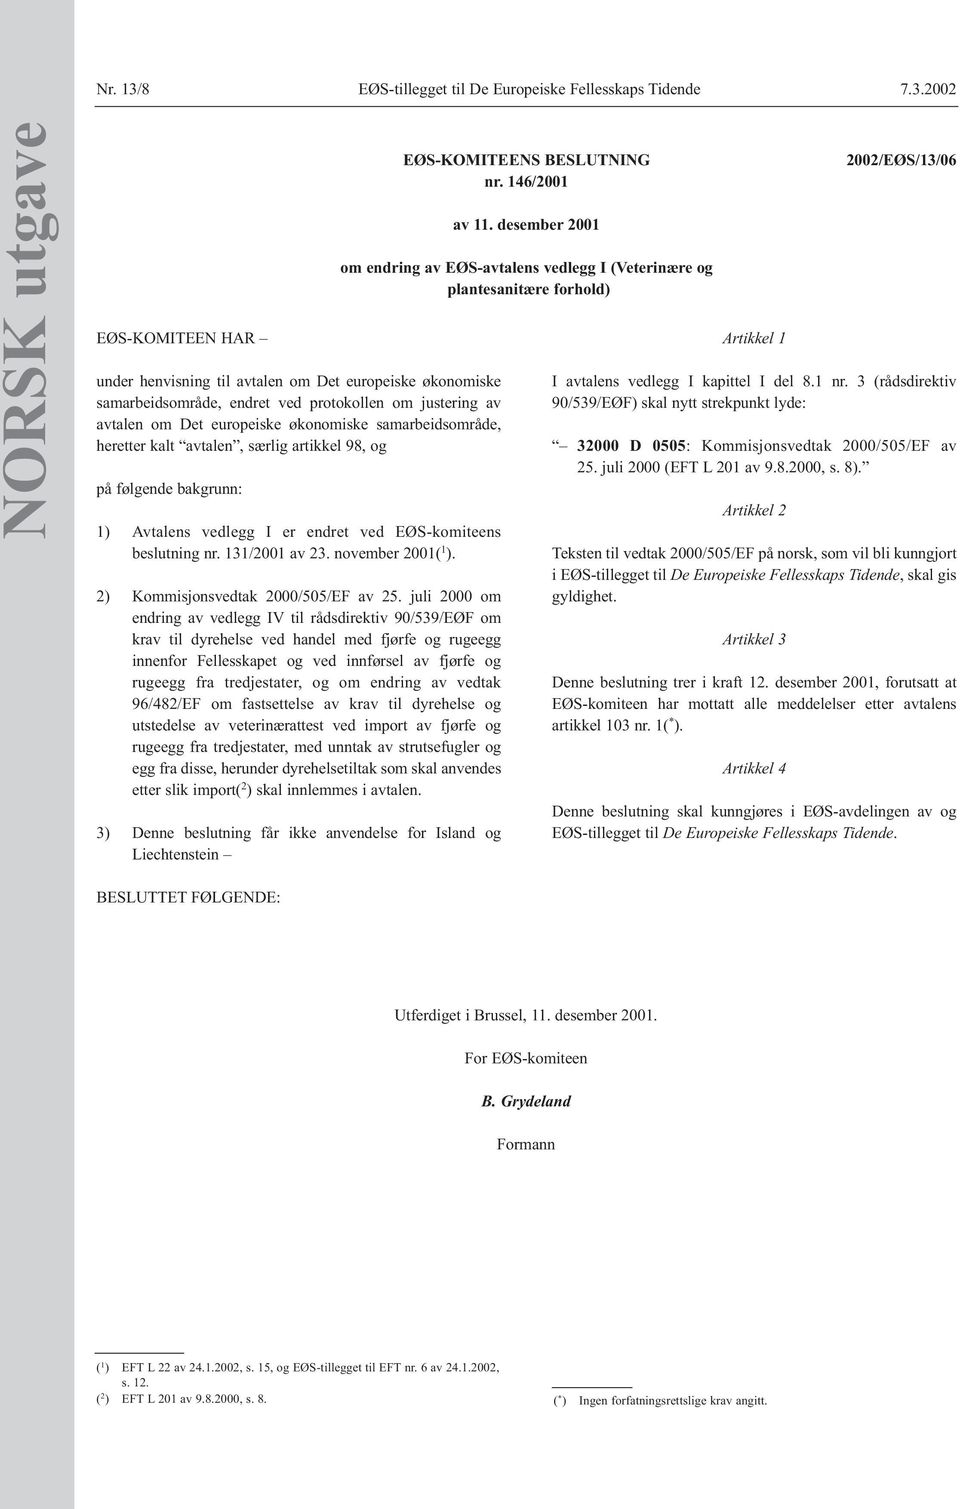 2002 NORSK utgave EØS-KOMITEEN HAR under henvisning til avtalen om Det europeiske økonomiske samarbeidsområde, endret ved protokollen om justering av avtalen om Det europeiske økonomiske